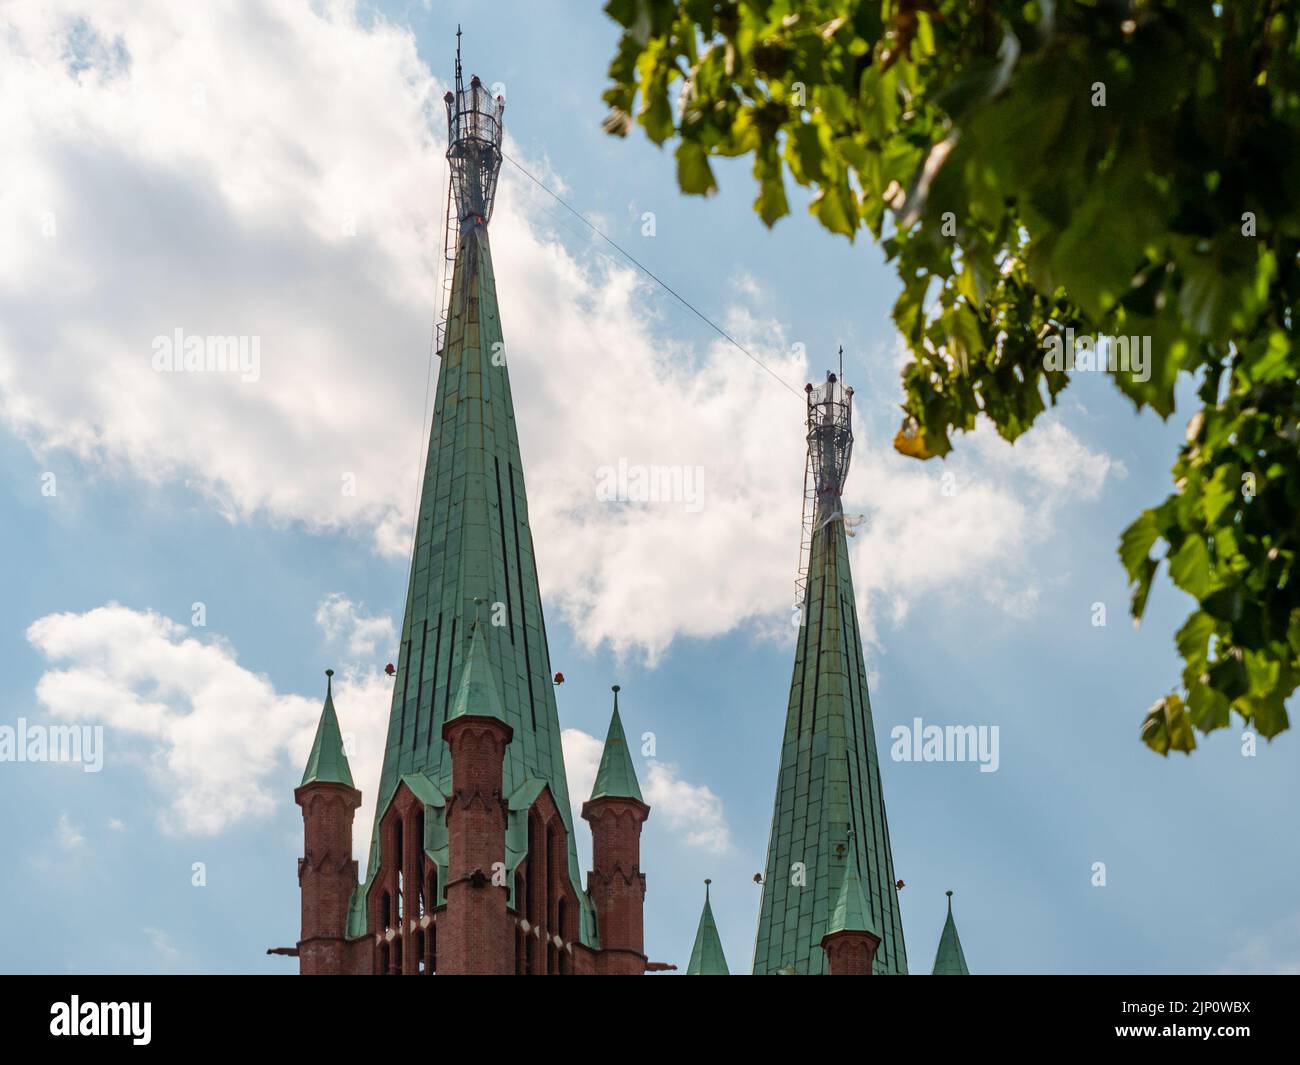 Tours de l'église Saint-Bonifatius à Berlin Kreuzberg. Toits en cuivre de couleur verte. Le bâtiment est construit en briques rouges dans le style néo-gothique. Banque D'Images